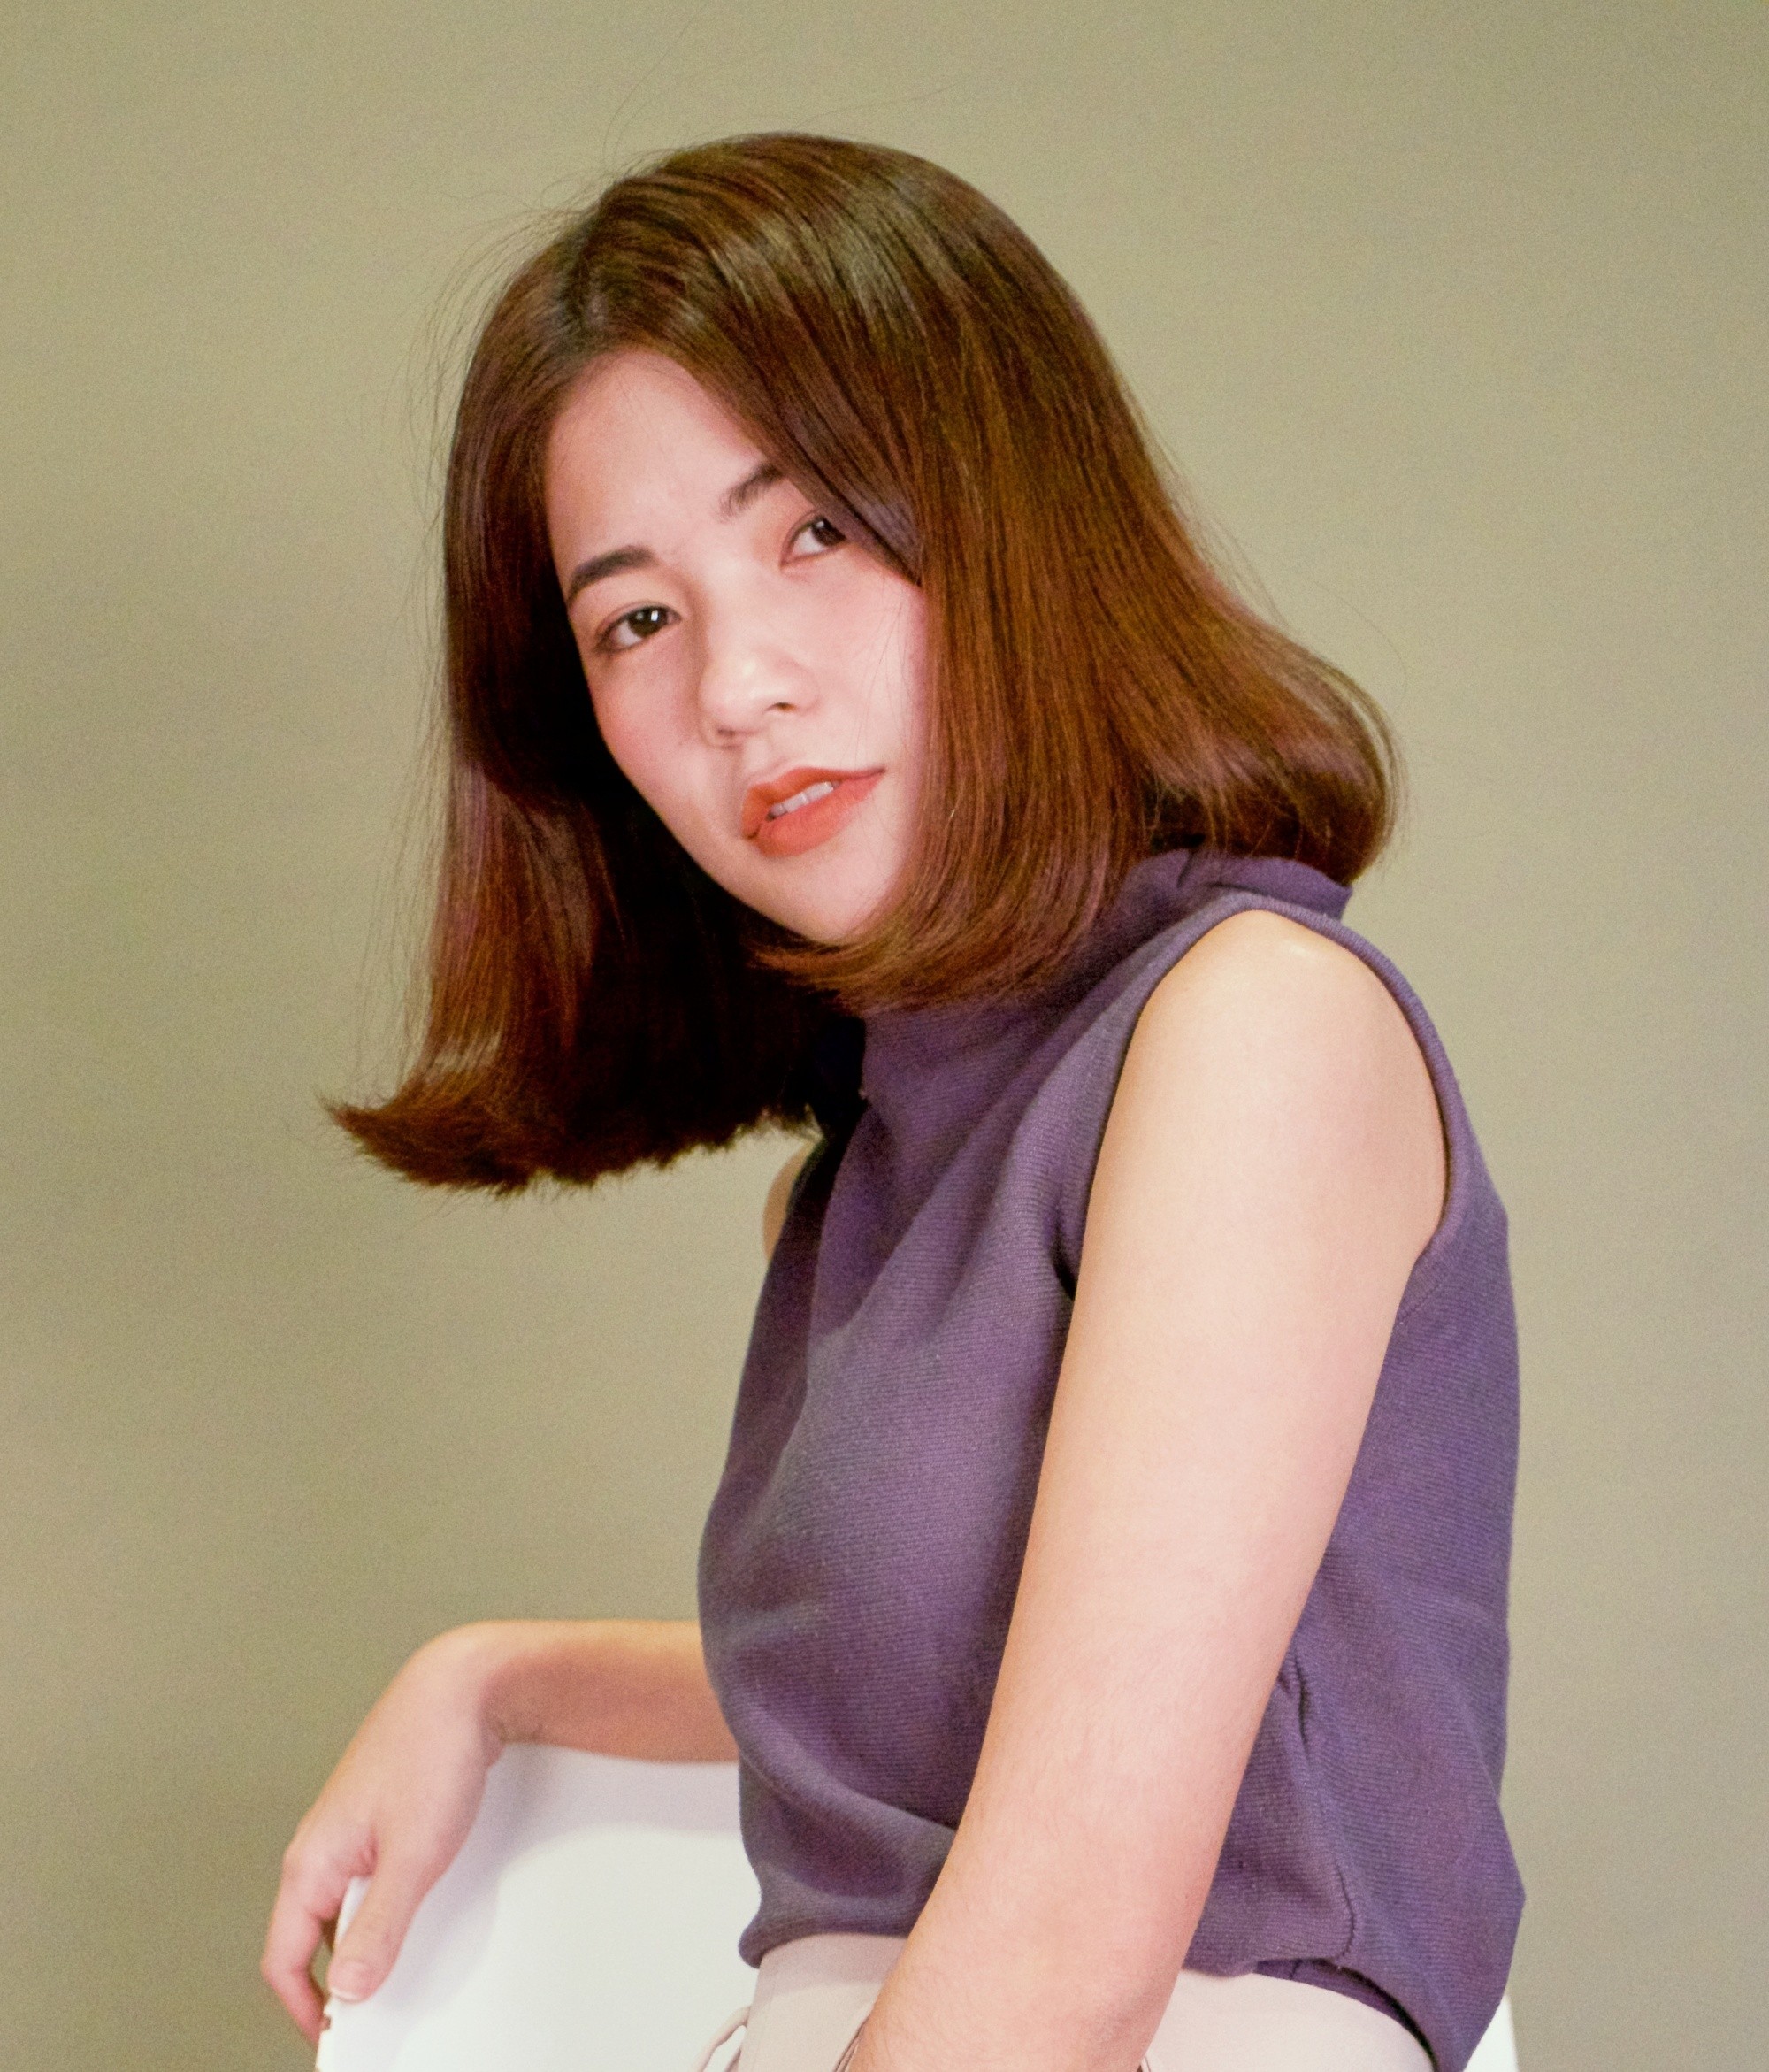 Femme asiatique aux cheveux bruns avec une frange latérale